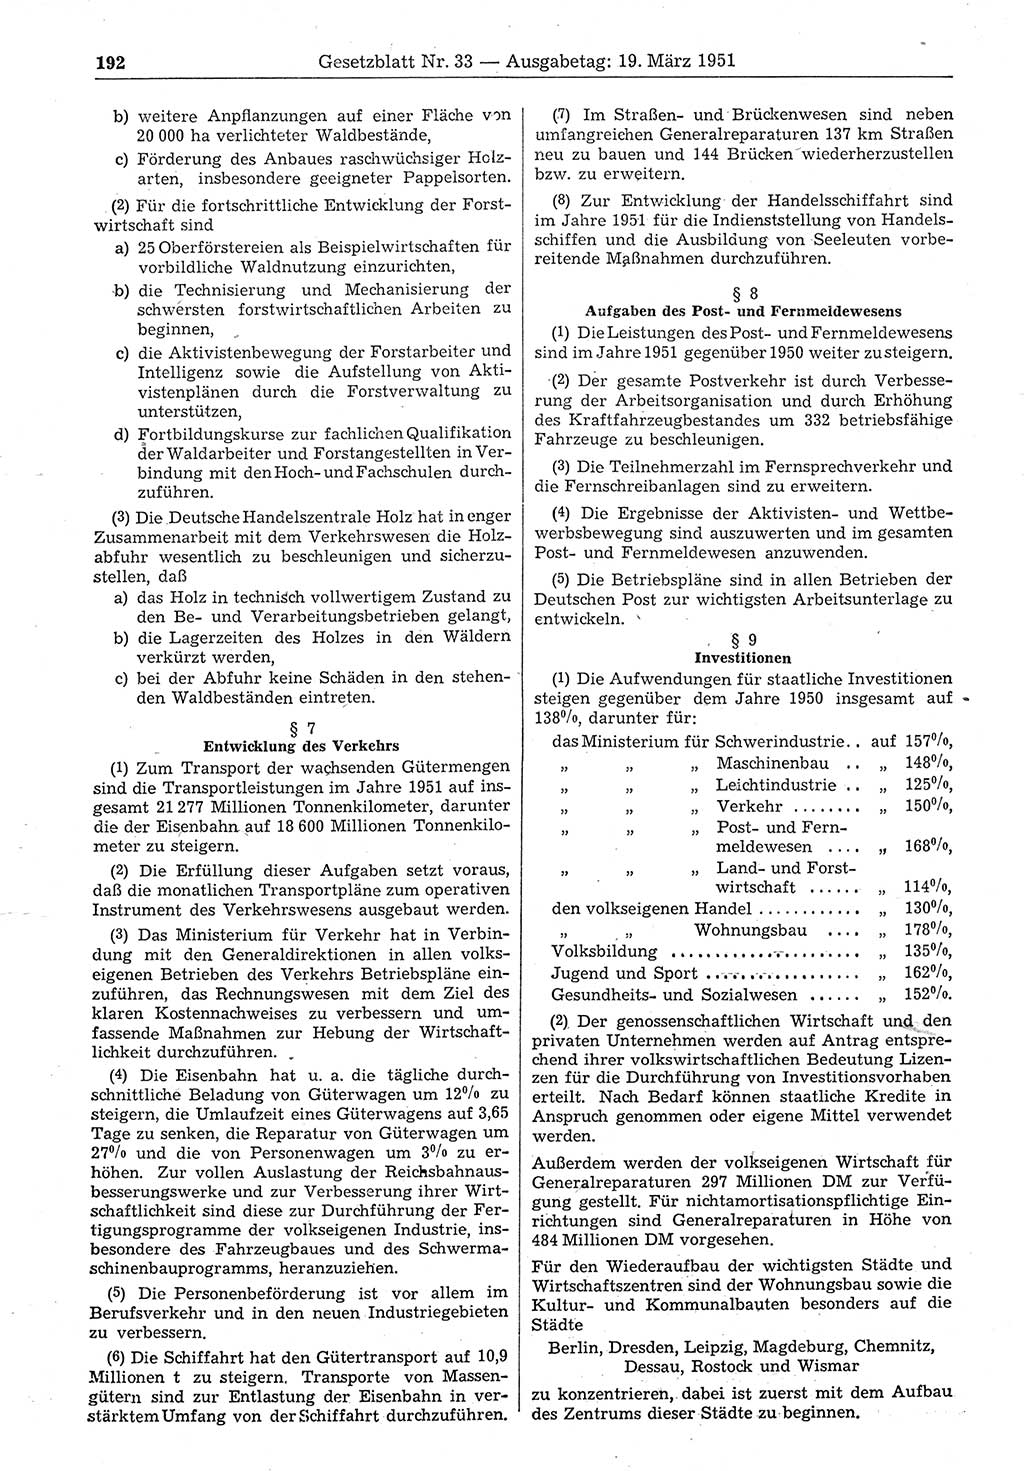 Gesetzblatt (GBl.) der Deutschen Demokratischen Republik (DDR) 1951, Seite 192 (GBl. DDR 1951, S. 192)